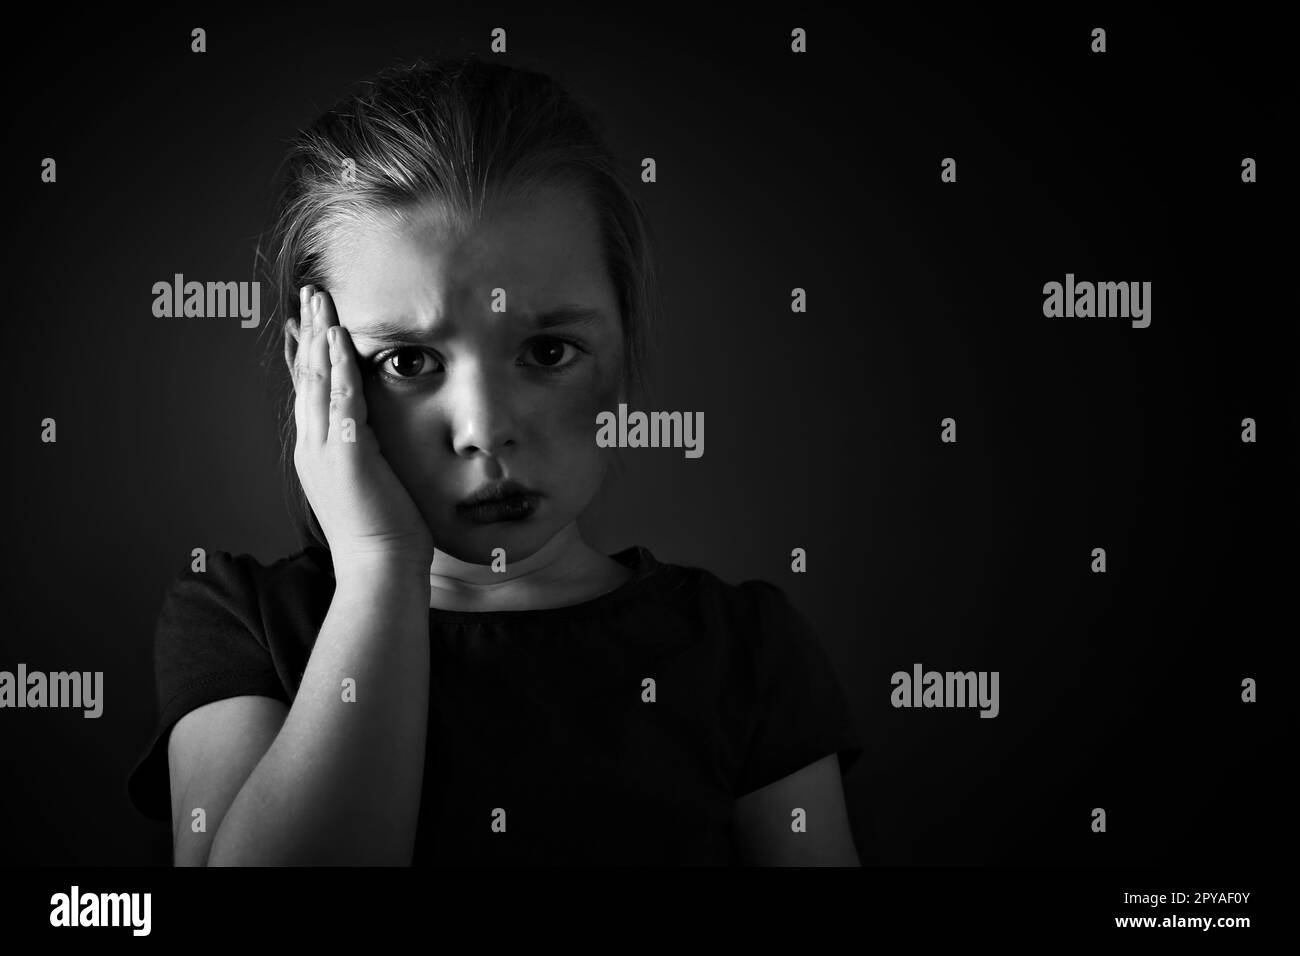 Petite fille avec des ecchymoses sur le visage contre un arrière-plan sombre, espace pour le texte. Victime de violence domestique Banque D'Images